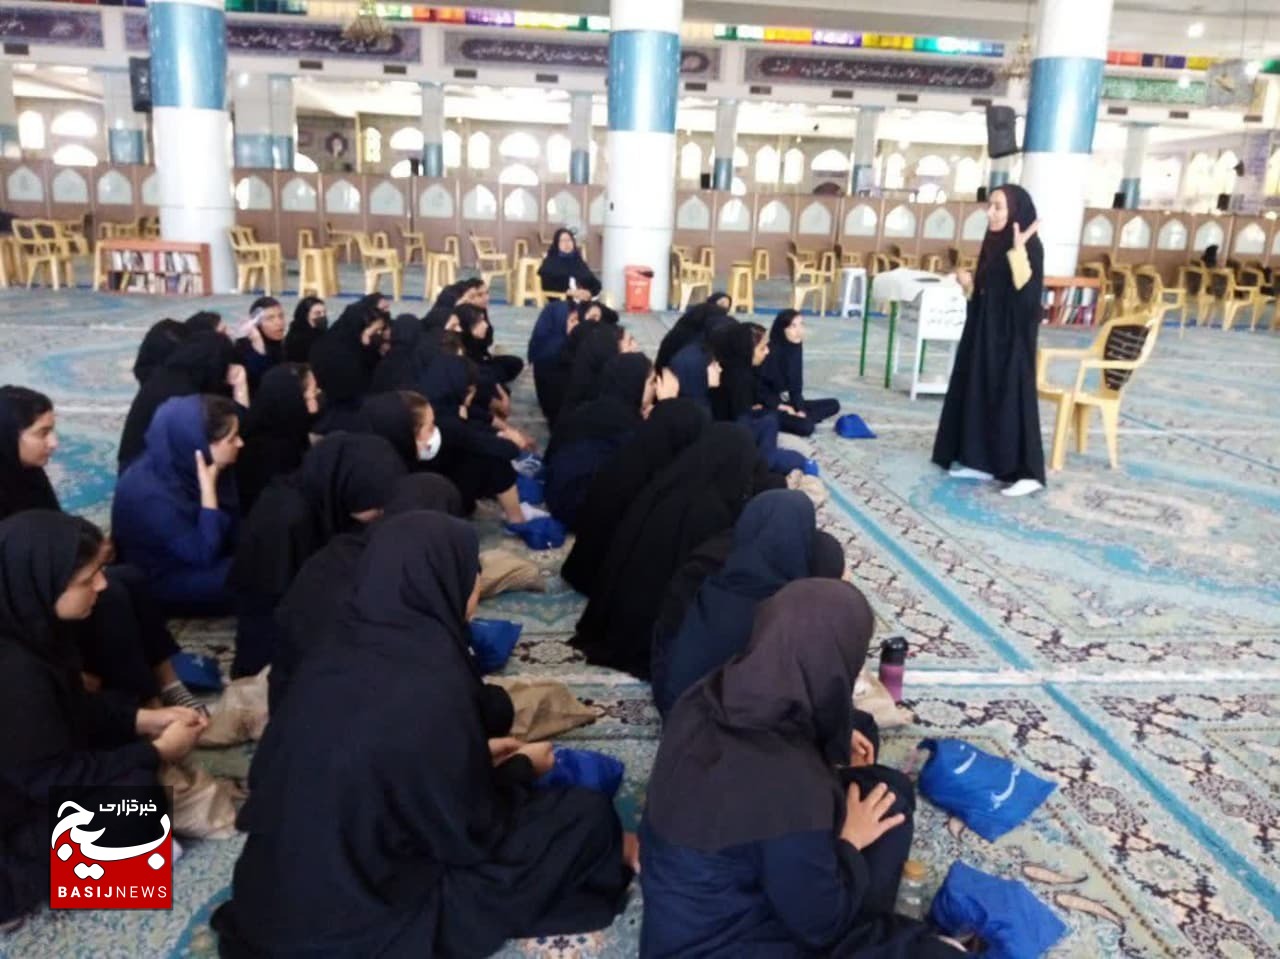 فعالیت در درس آمادگی دفاعی مدارس تا شرکت در اردوهای جهادی بانوان/ خانم هایی که بنایی نیز می کنند